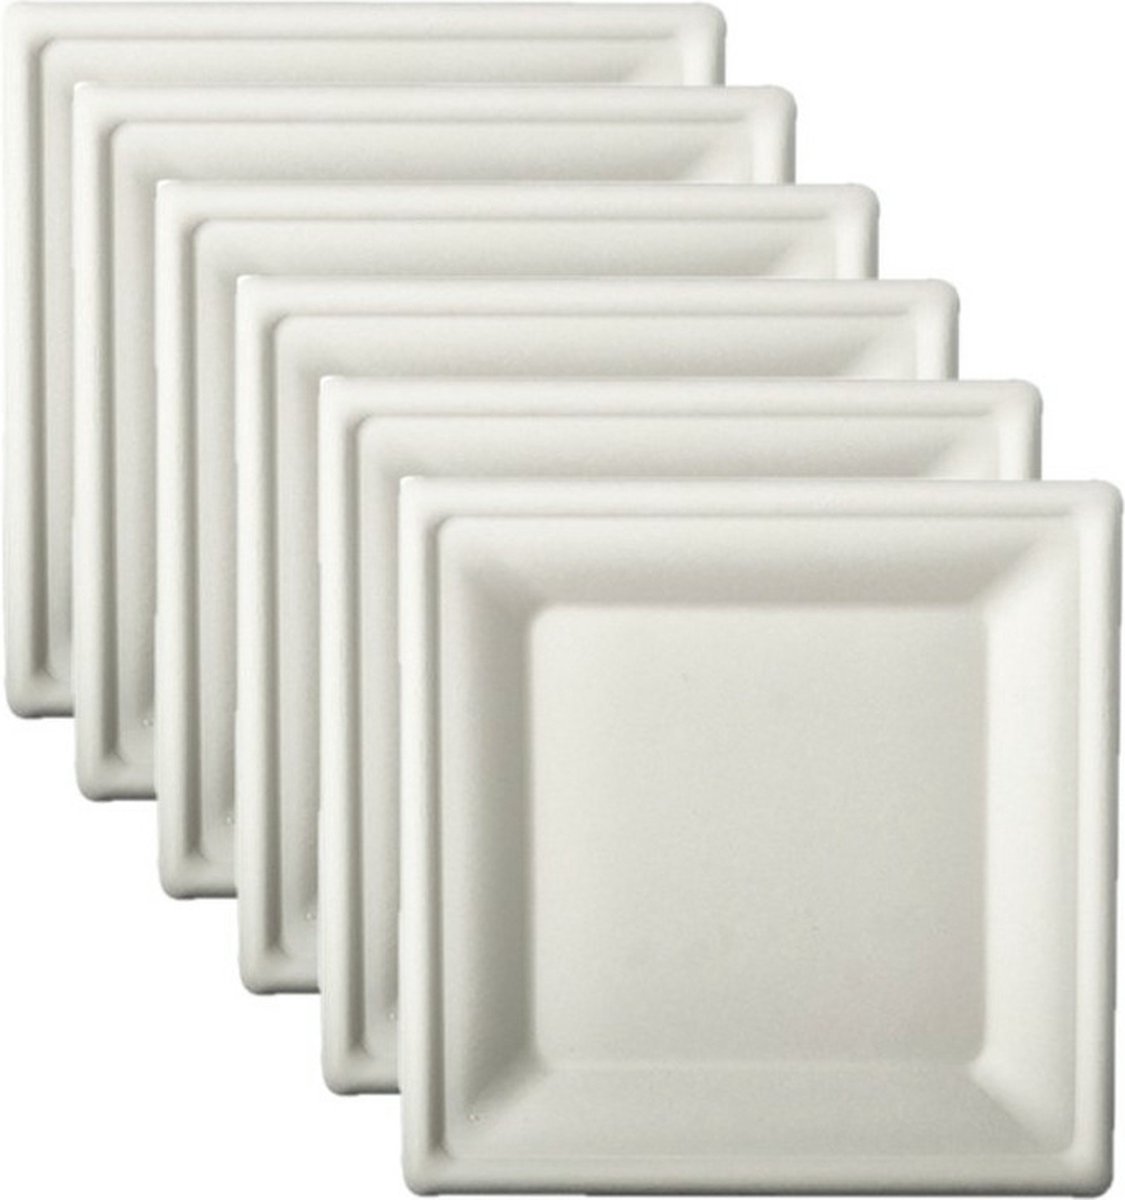 48x stuks witte suikerriet lunchbordjes 20 cm biologisch afbreekbaar - Wegwerp bbq/verjaardag bordjes